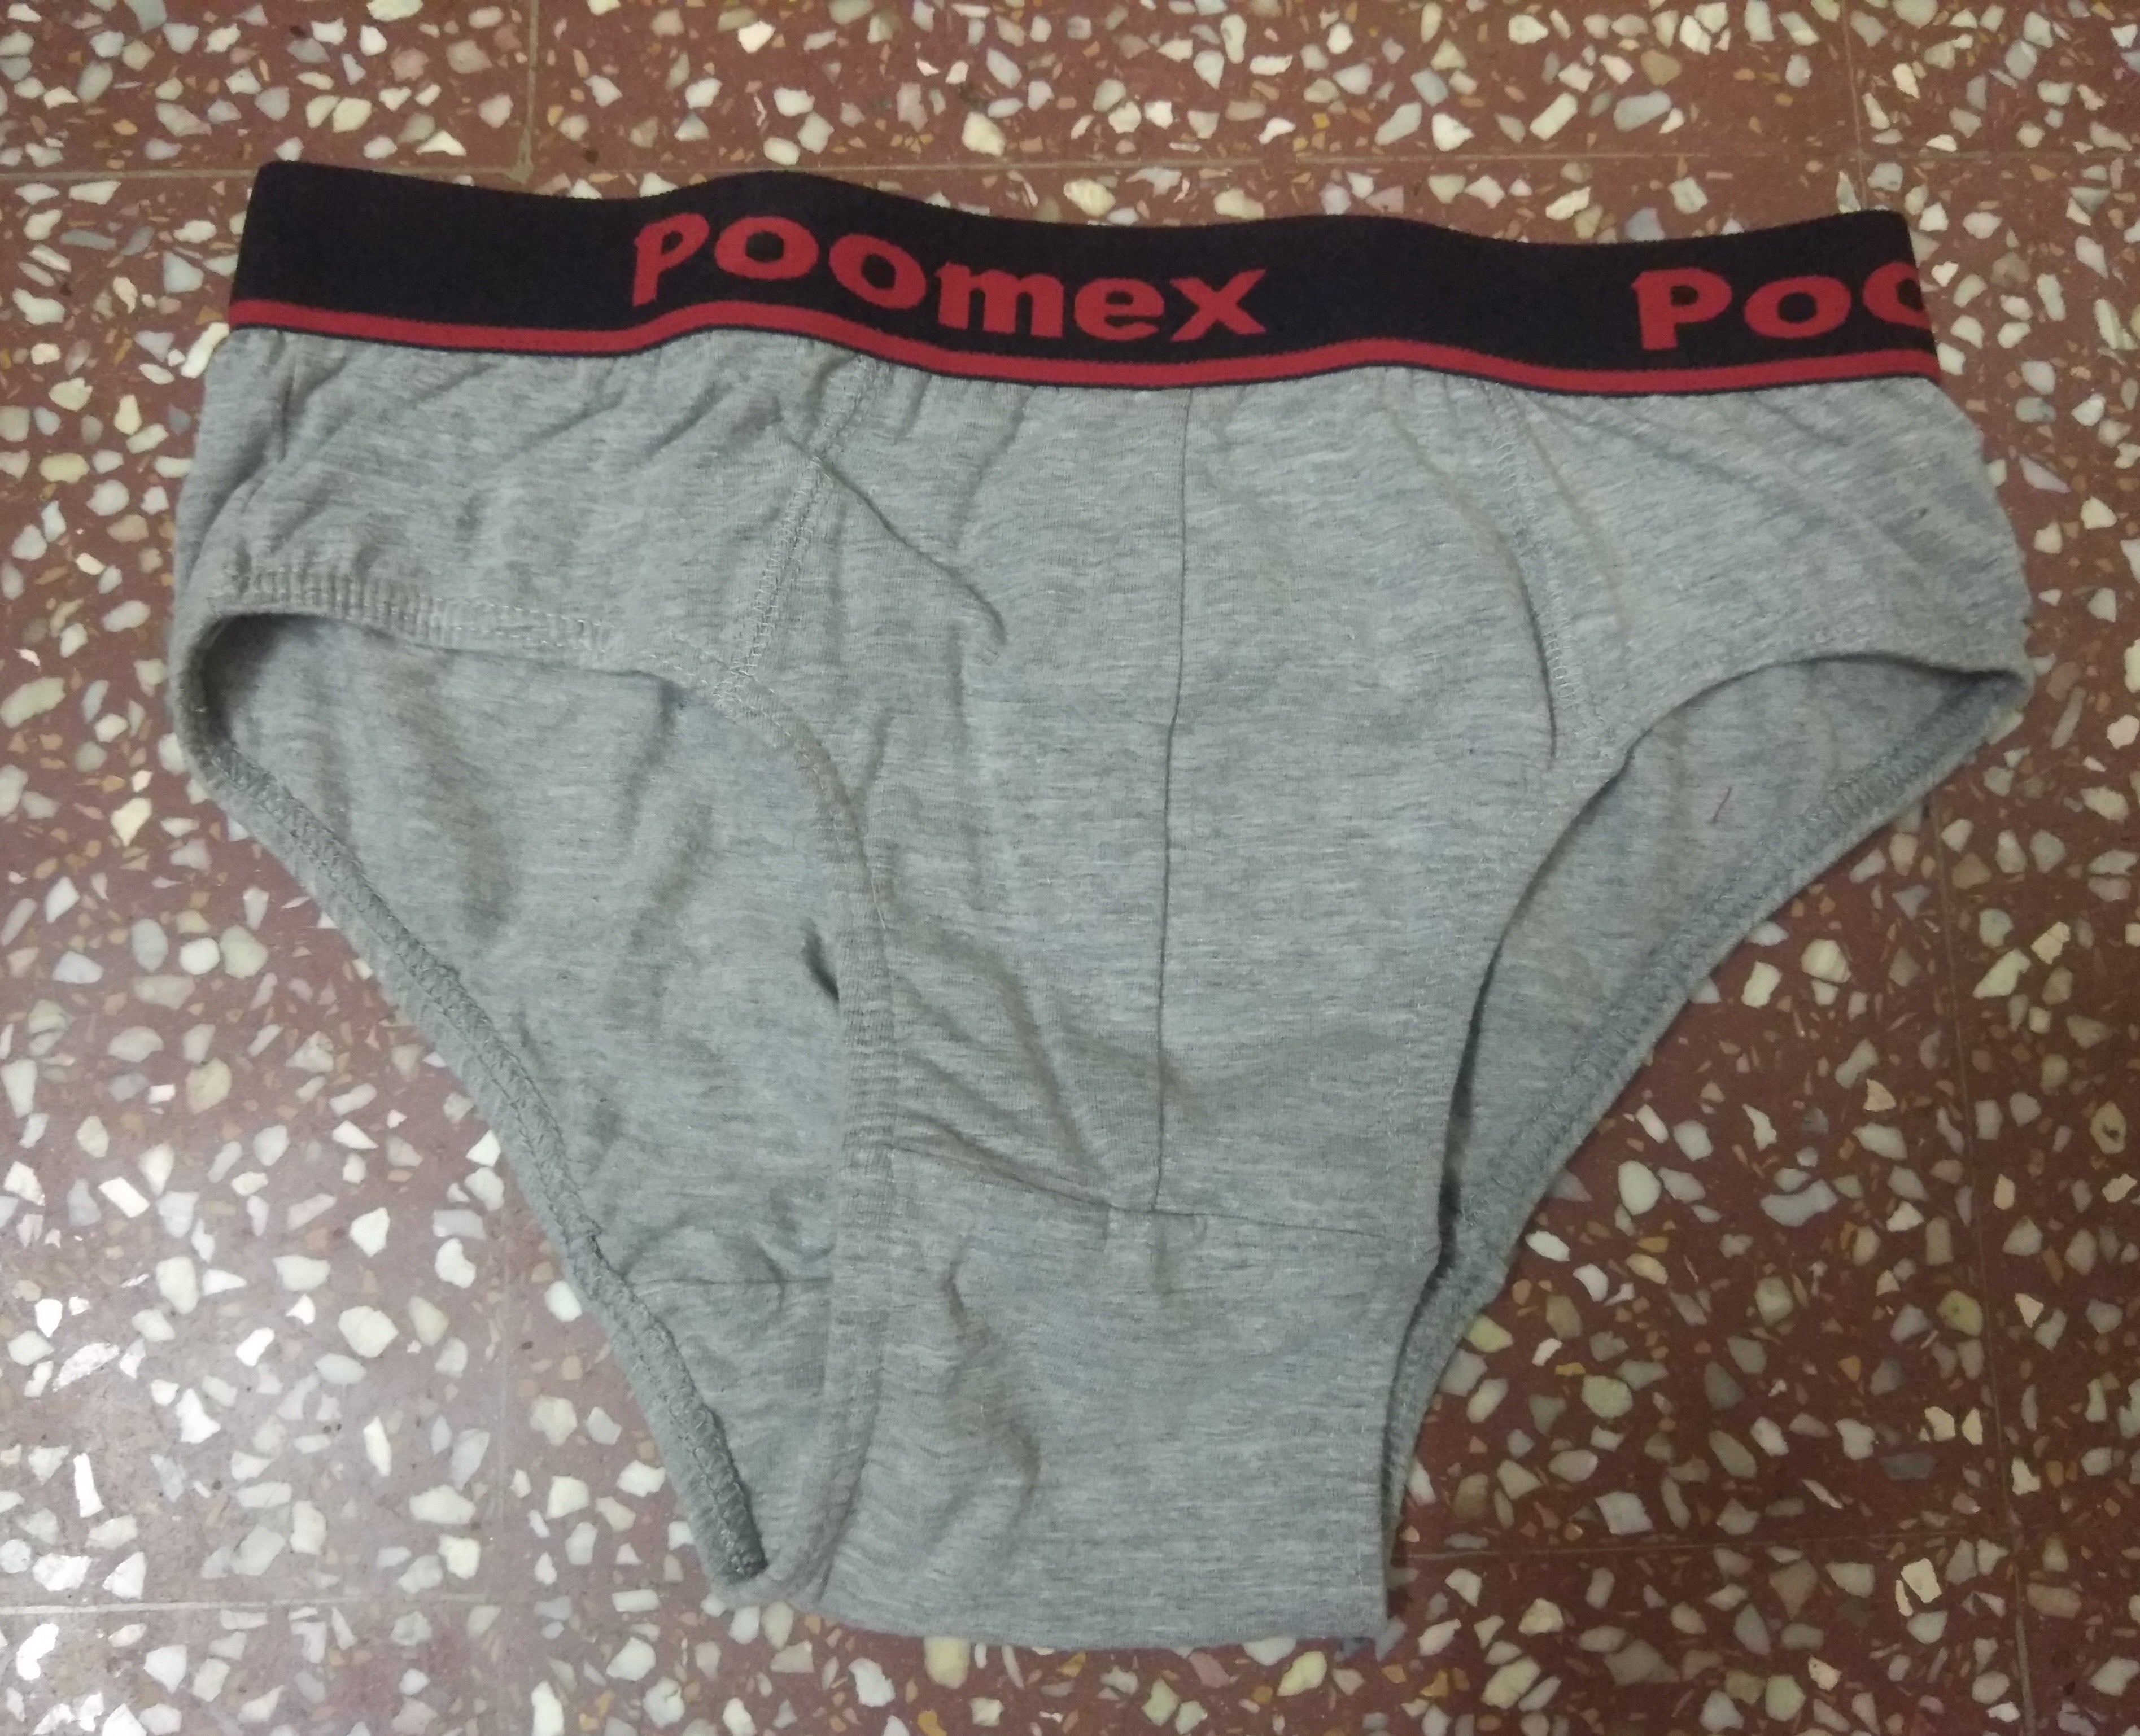 Poomex Vest, Poomex Brief, Poomex Gents Innerwear, Poomex Ladies Innerwear  – tagged 